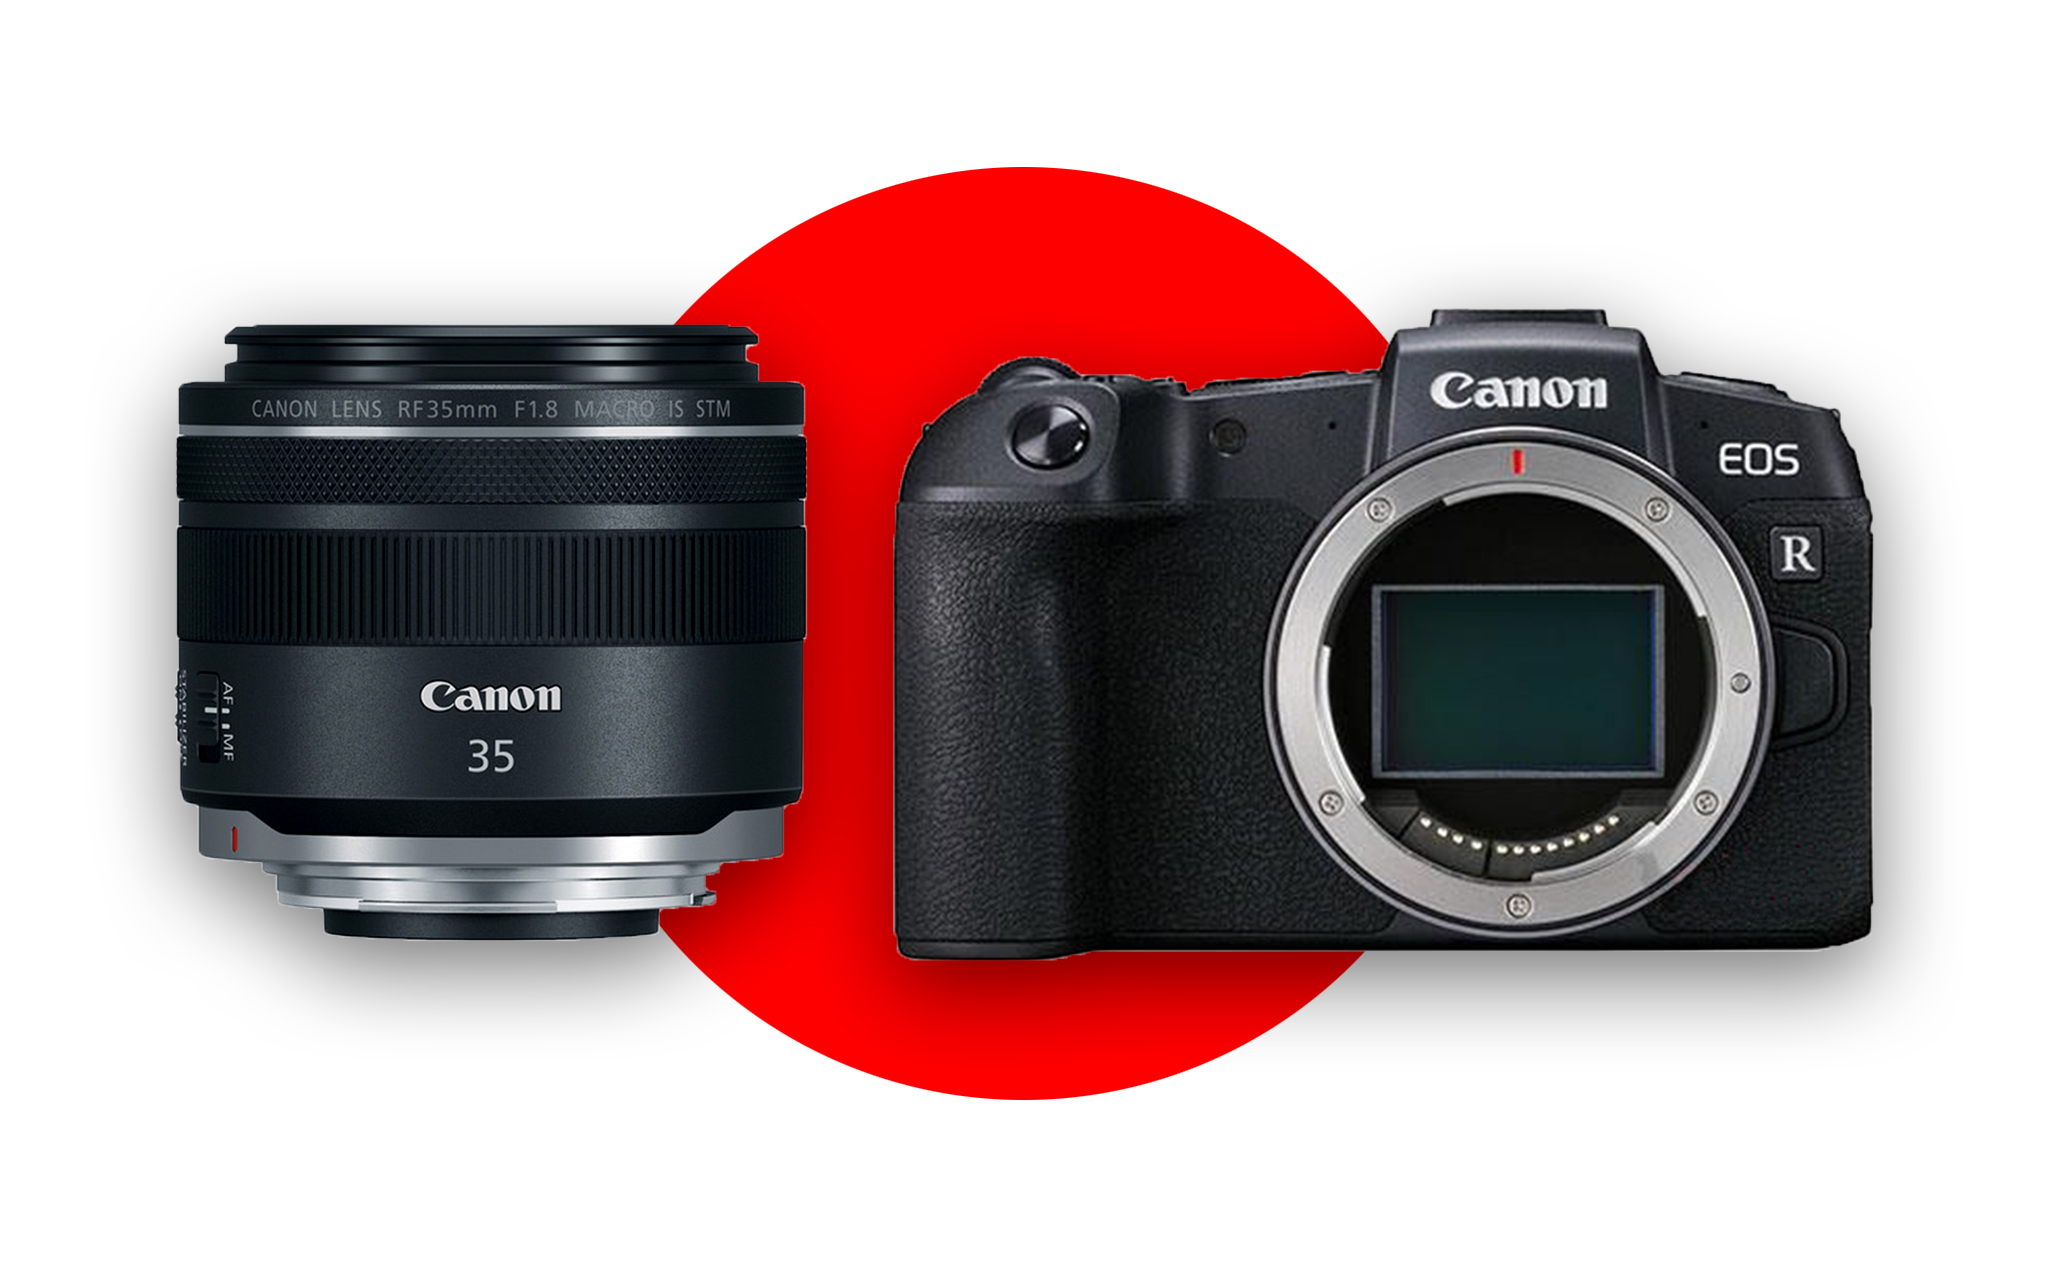 Canon RF 35mm f/1.8 IS Macro STM sẽ là kit lens cho EOS RP tại Nhật Bản